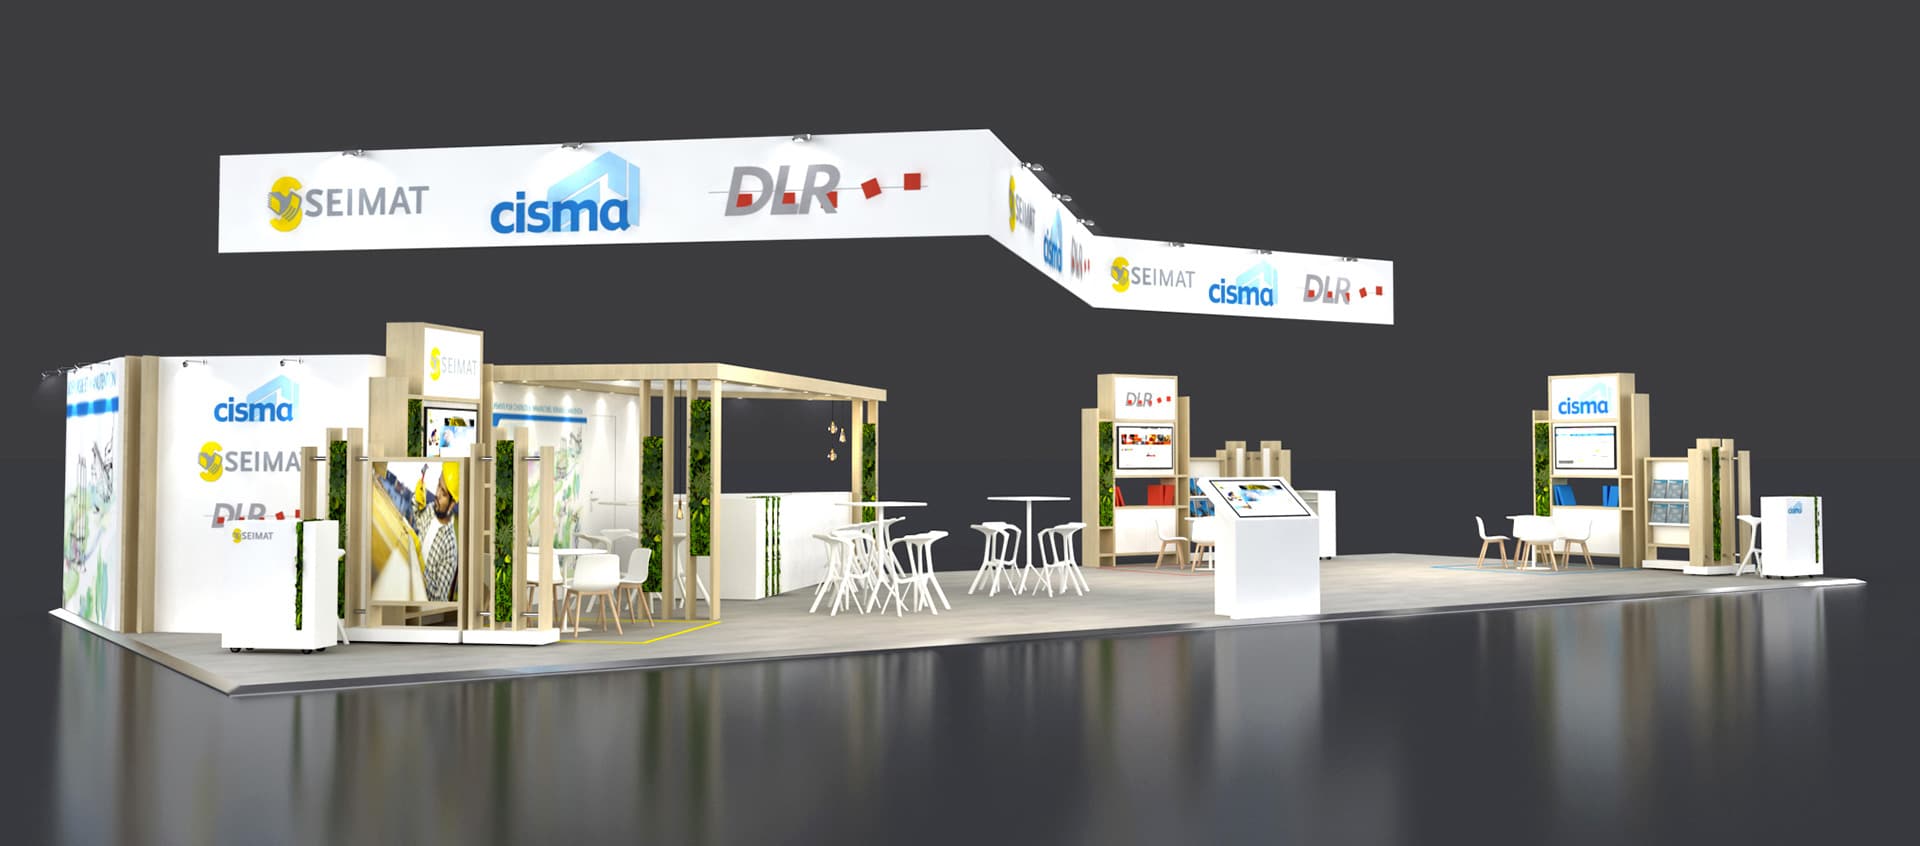 STIK&CO-design-architecture-événementiel-Cisma-DLR-Seimat-Paris-Intermat-stand-booth-event-evenementiel-aménagement-espace